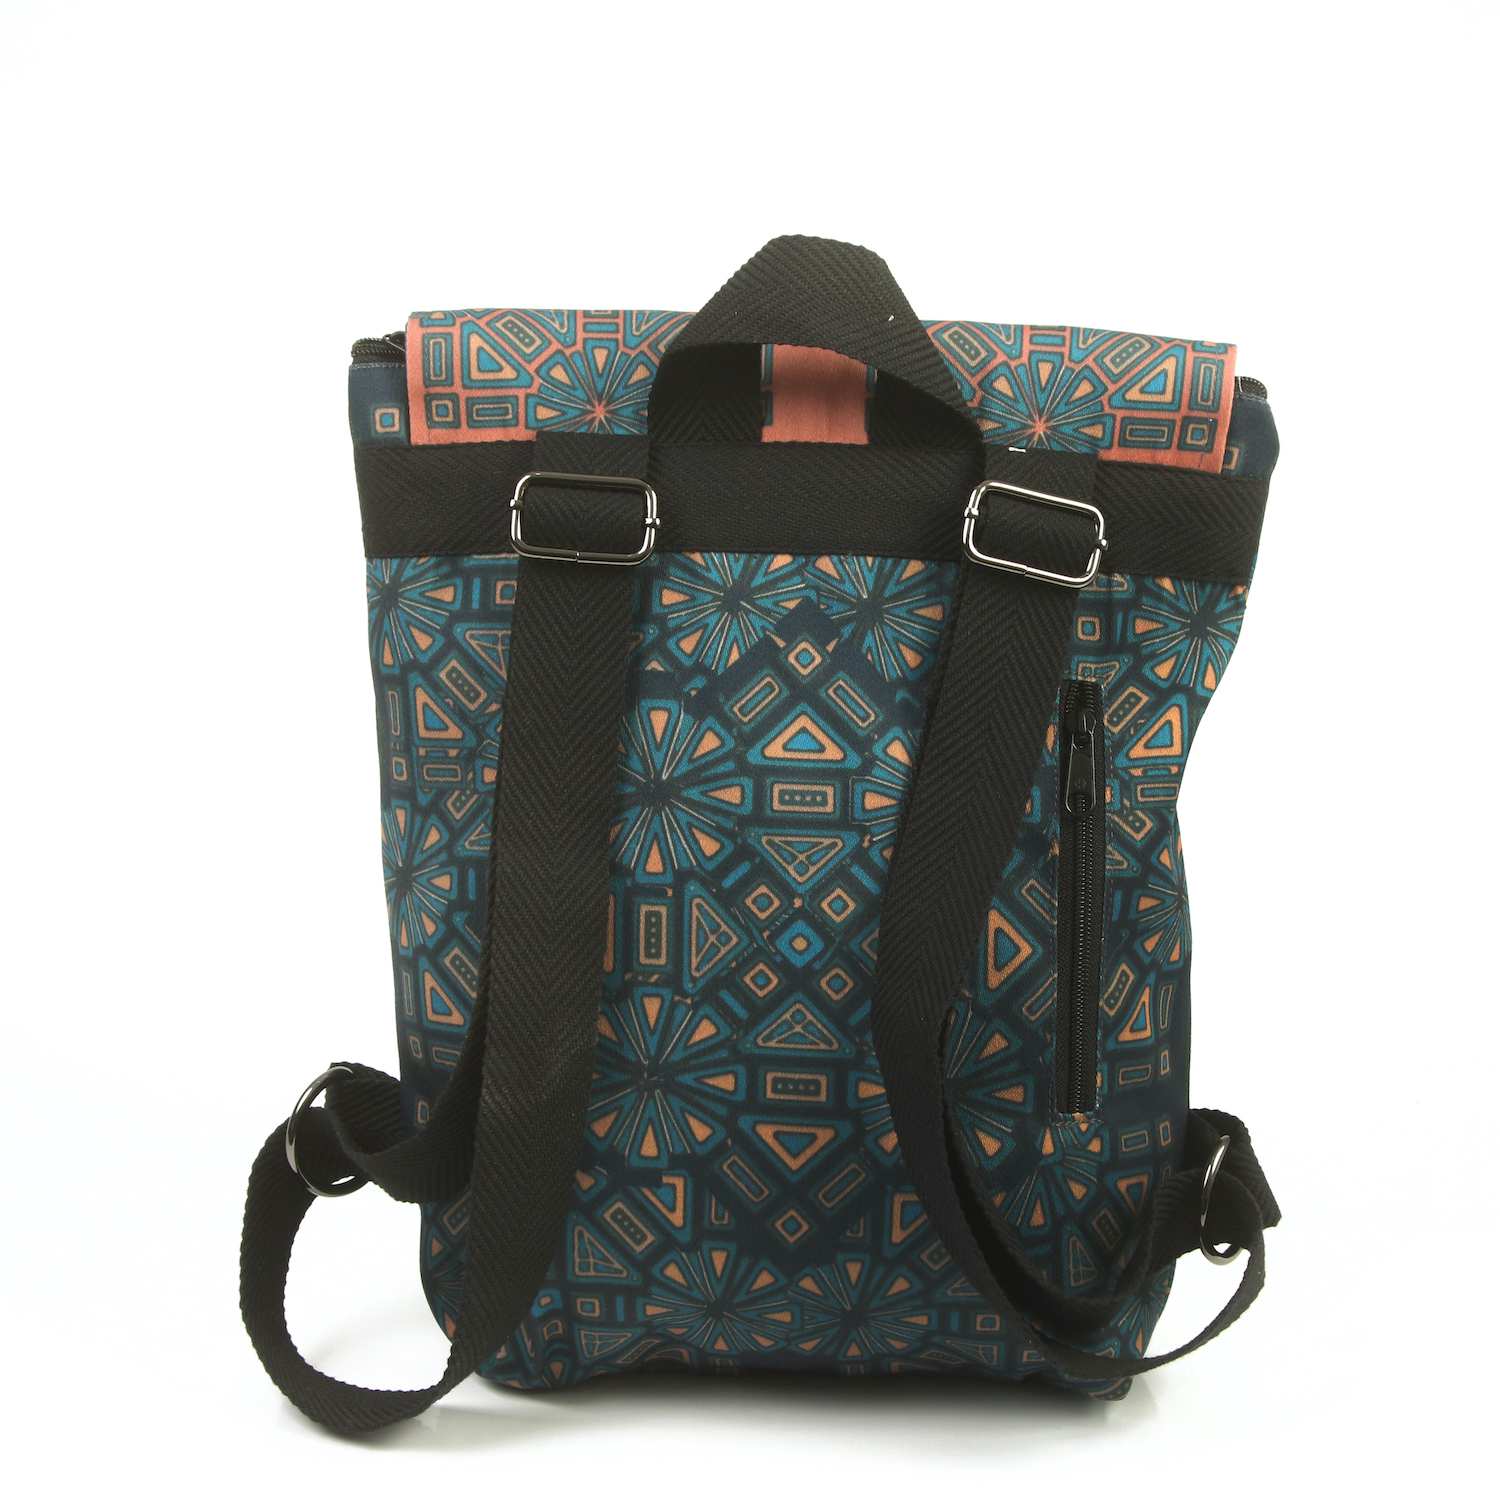 LazyDayz-Designs-Backpack-γυναικείος-σάκος-πλάτης-χειροποίητος-bb0704b